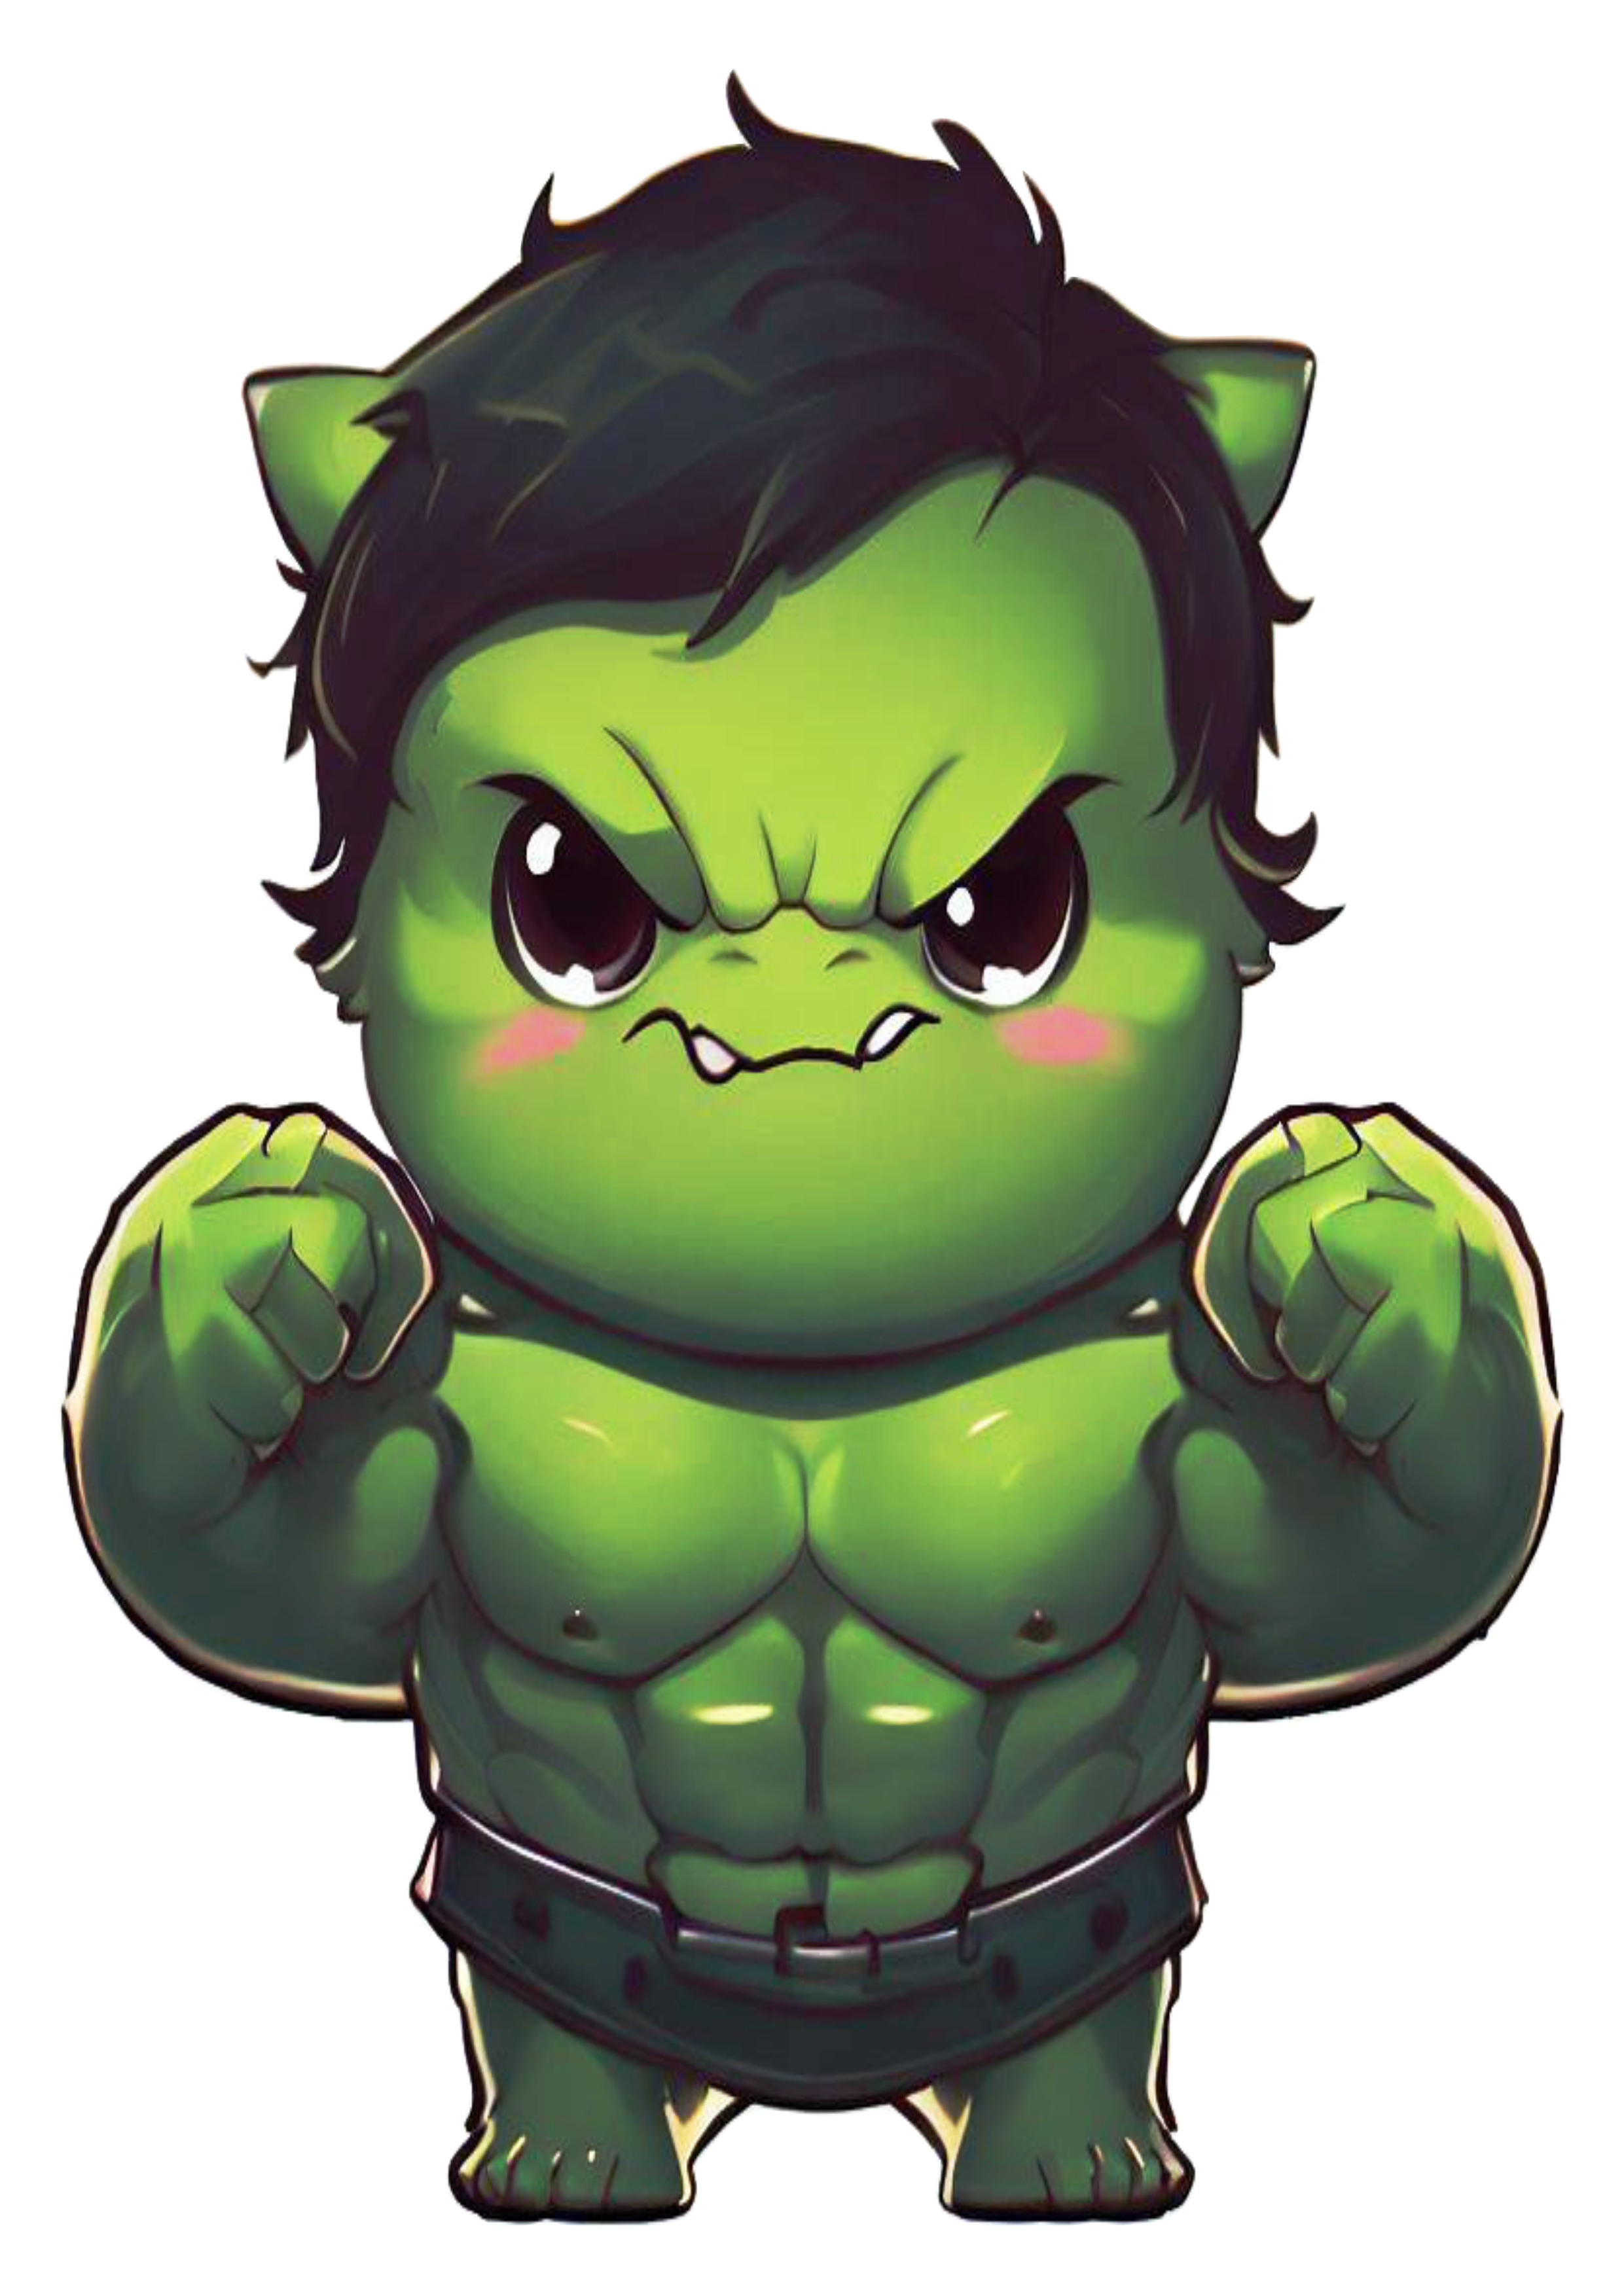 Hulk ogro baby cute fofinho super heroi forte infantil bravo imagem sem fundo png